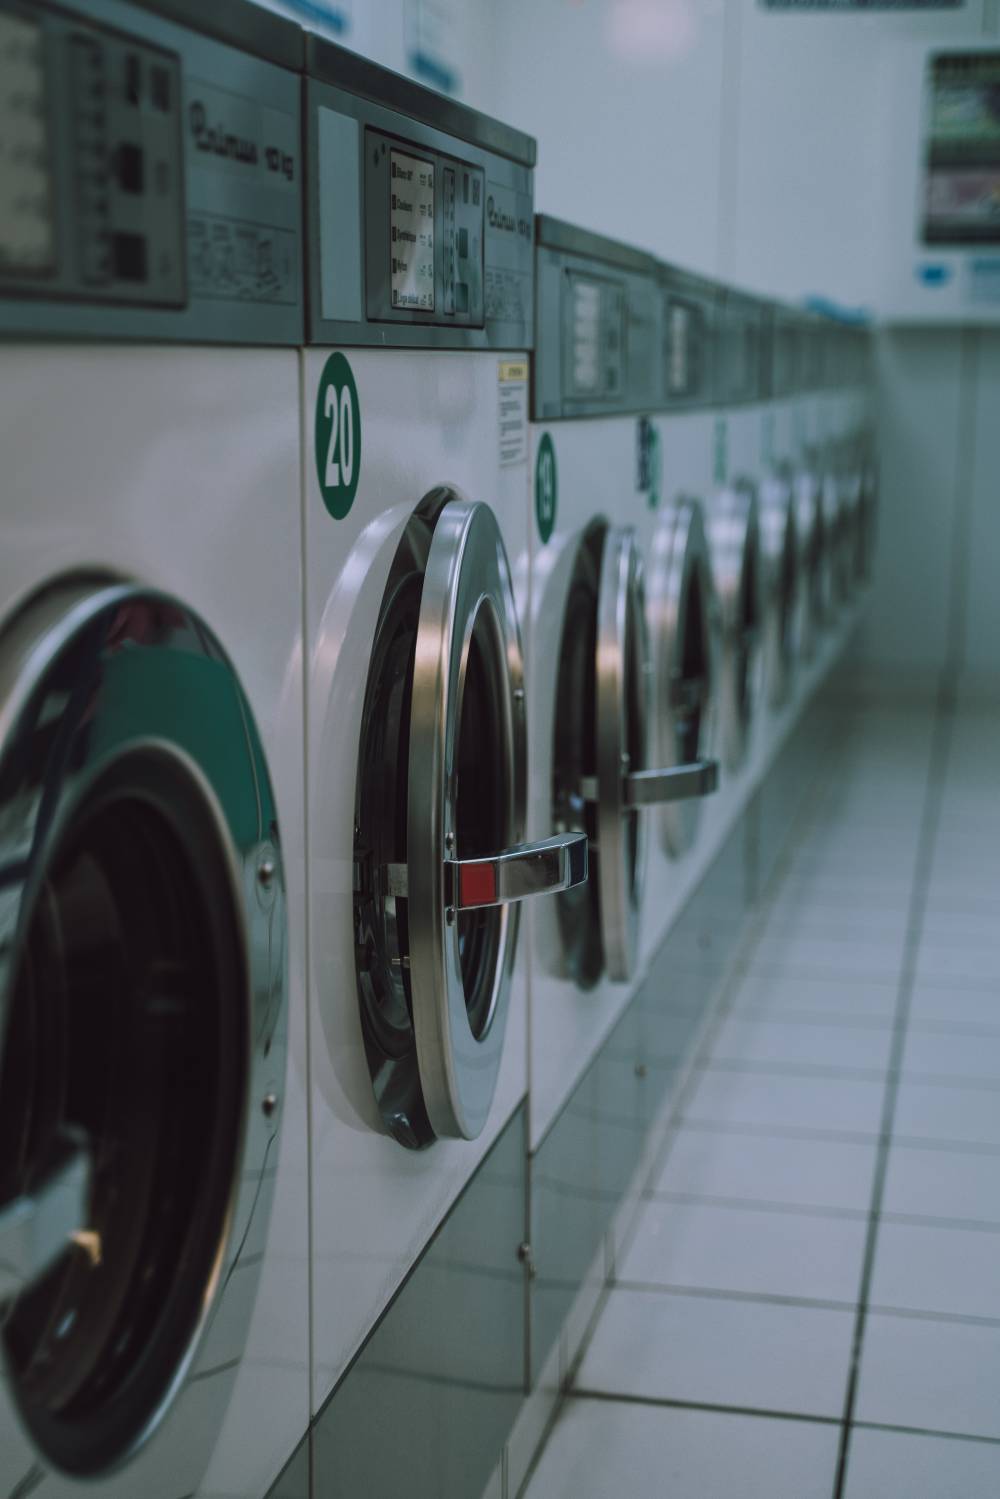 washing machine tumbling Clothes Shrinking